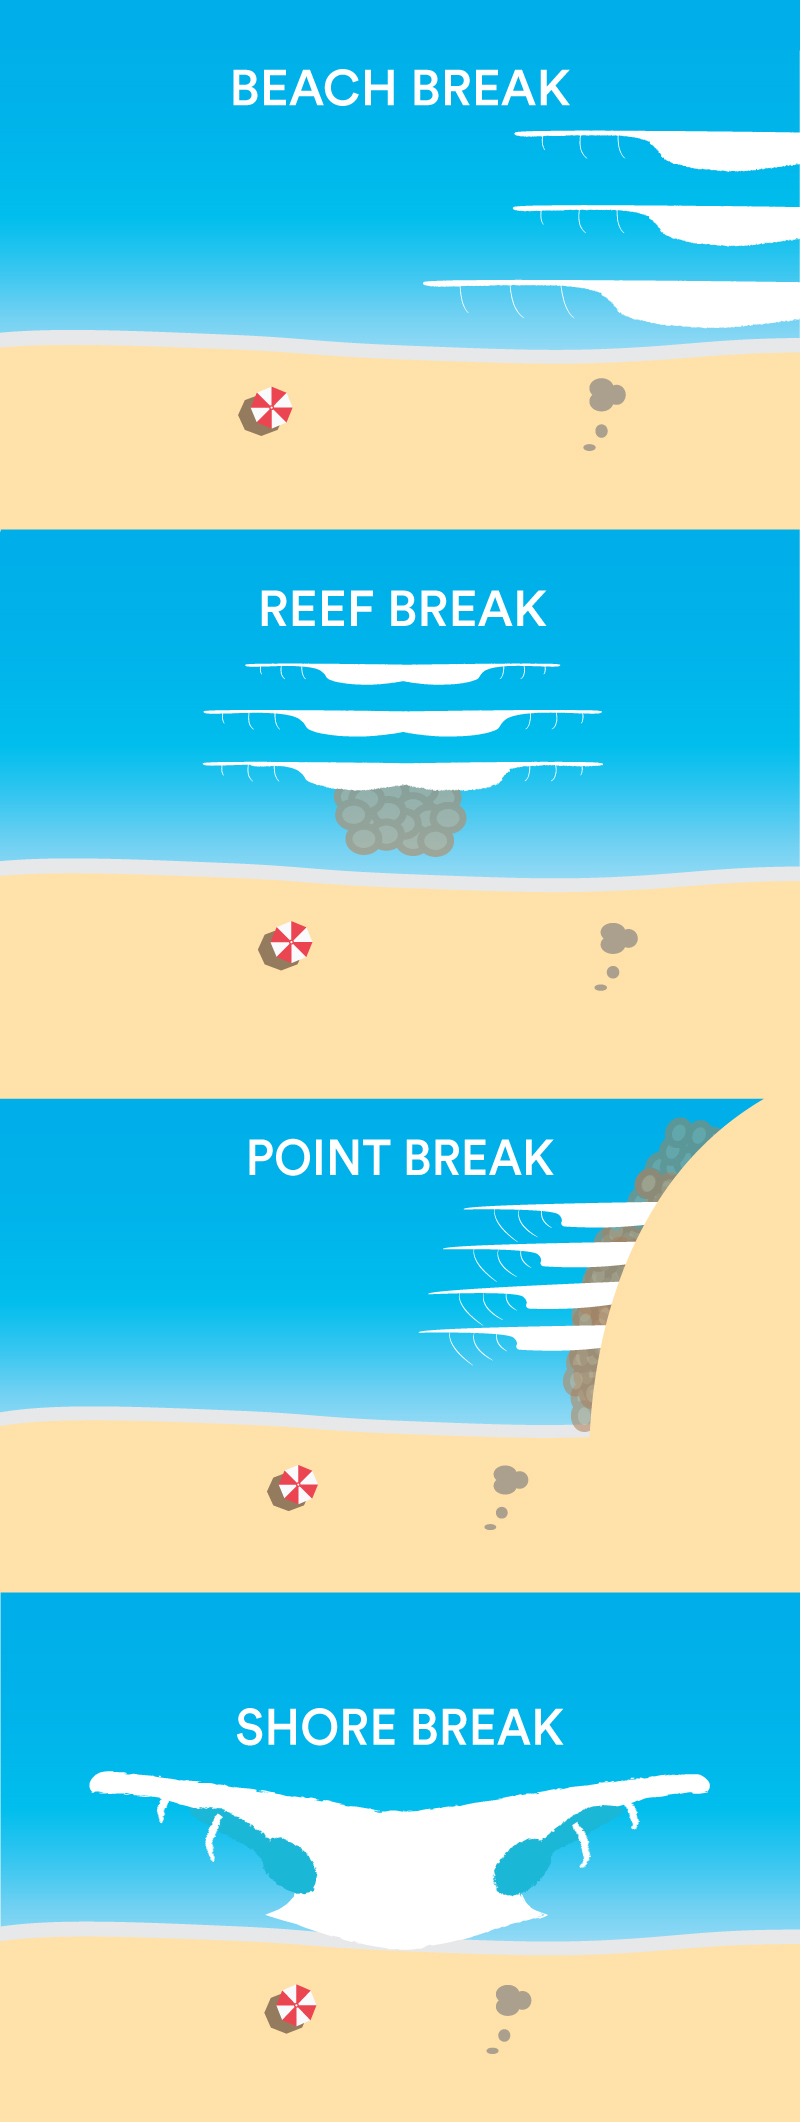 Les différentes configurations de spots pour le kitesurf, le windsurf et le surf